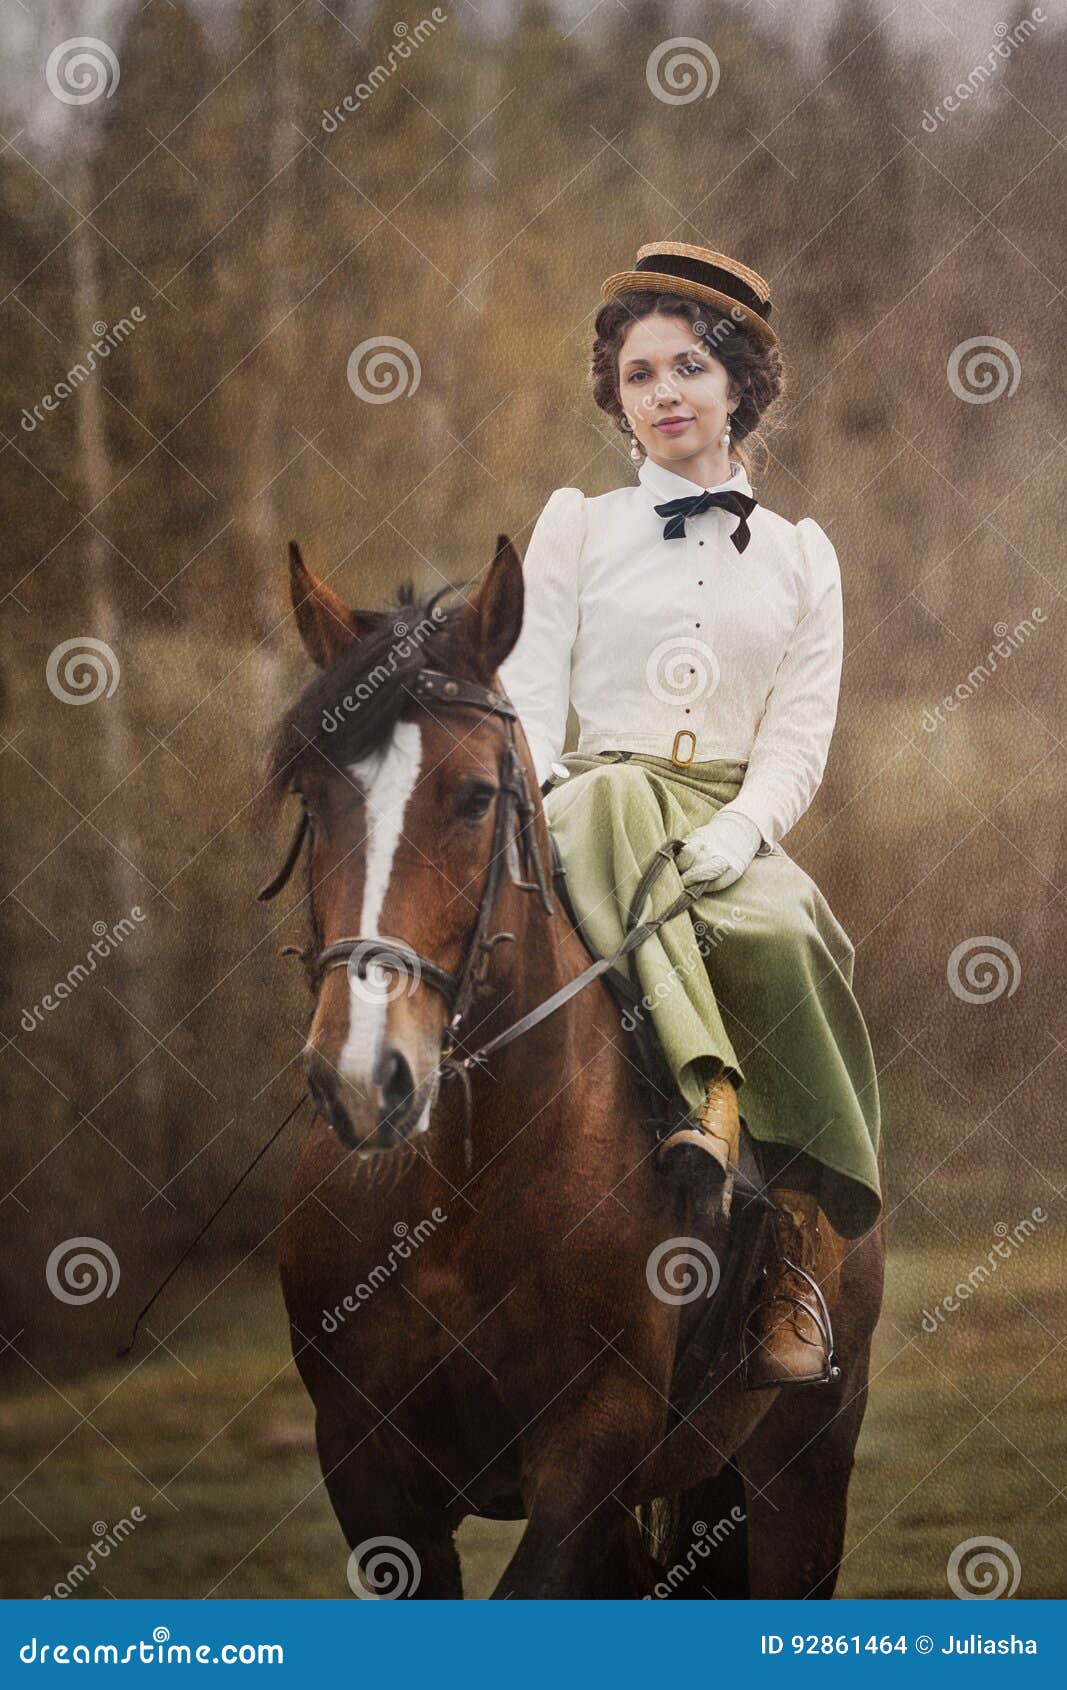 noblewoman portrait on horse